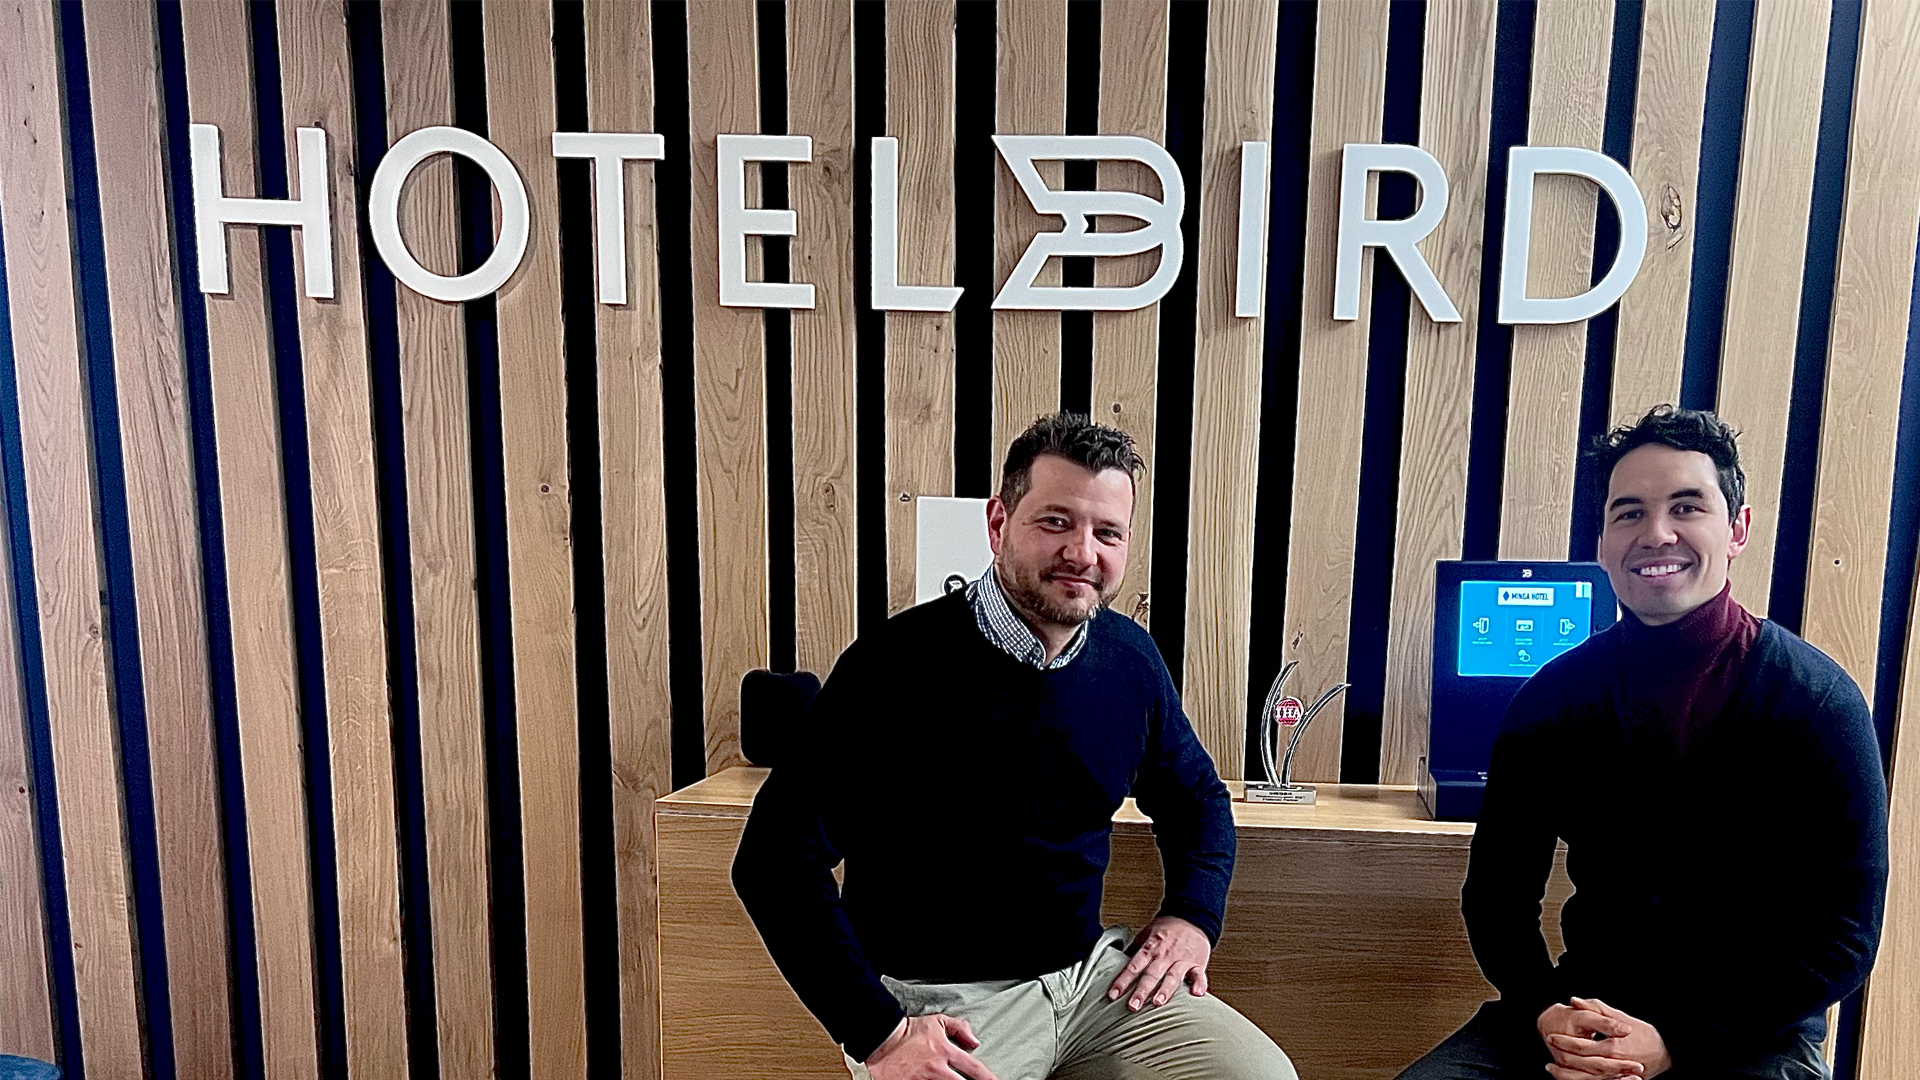 SIHOT y Hotelbird lanzan una tecnología digital conjunta para huéspedes